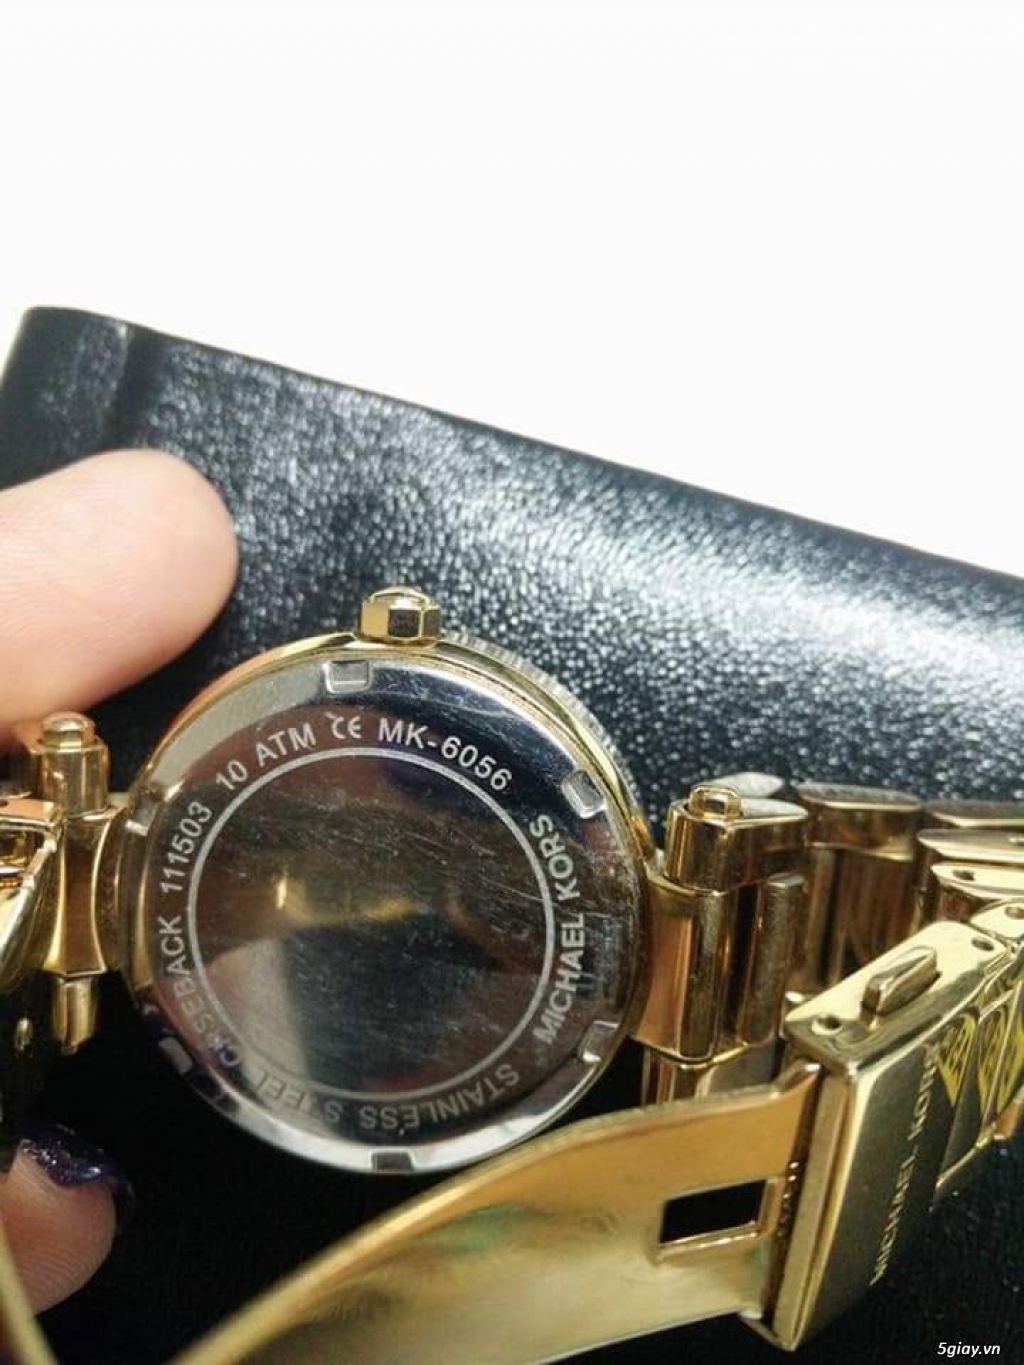 Cần bán : Đồng hồ Michael Kors M6056 - Chính hãng - Đã qua sử dụng - 2